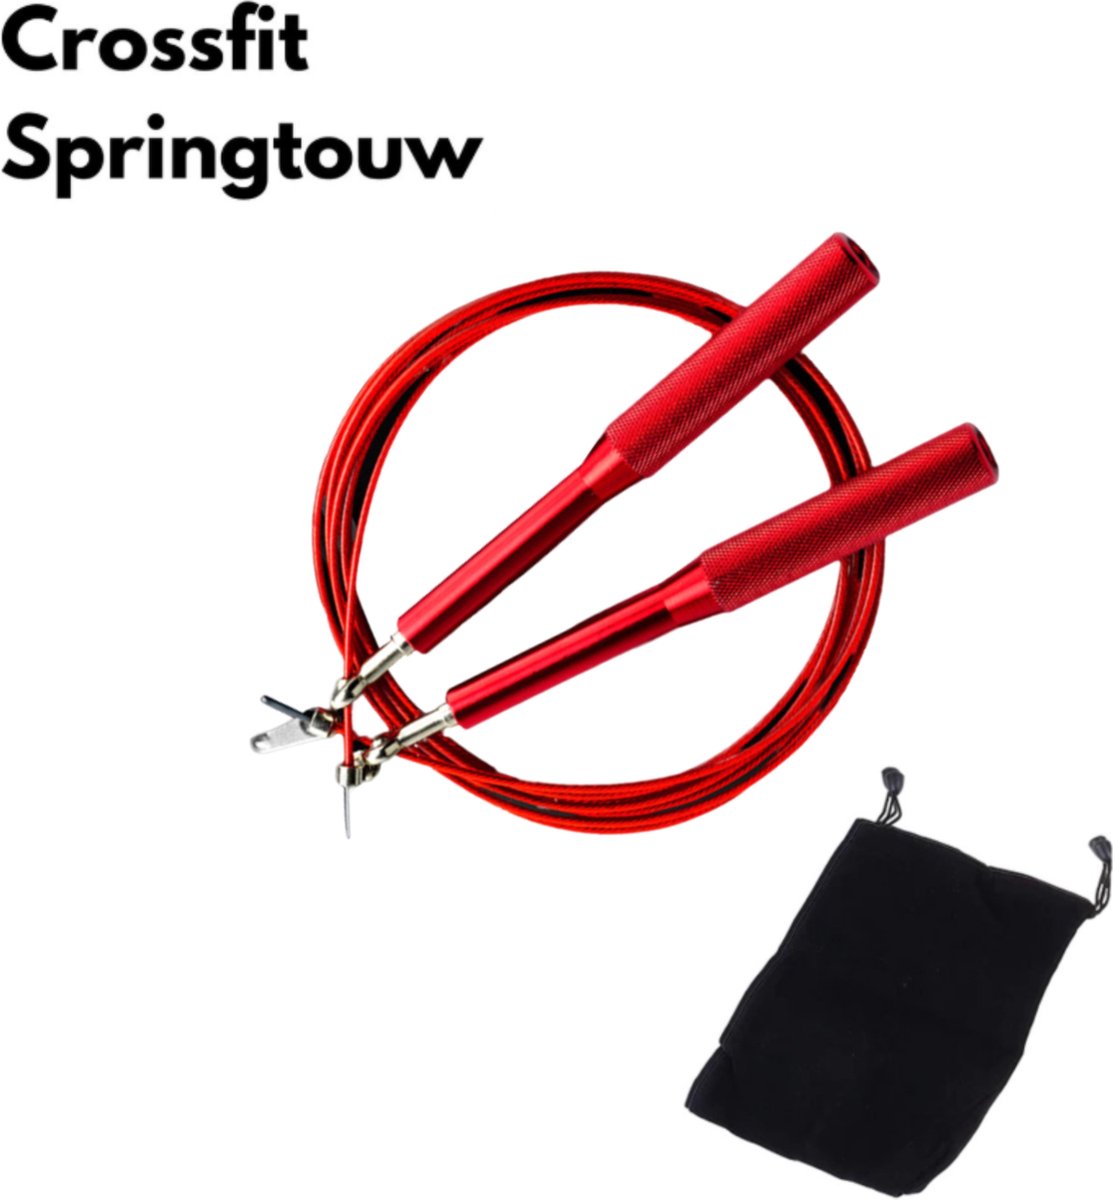 Springtouw volwassenen|Springtouw|Speed Rope|Speed rope|Crossfit|Touwtje springen|Verstelbaar|Kogellager|Rood